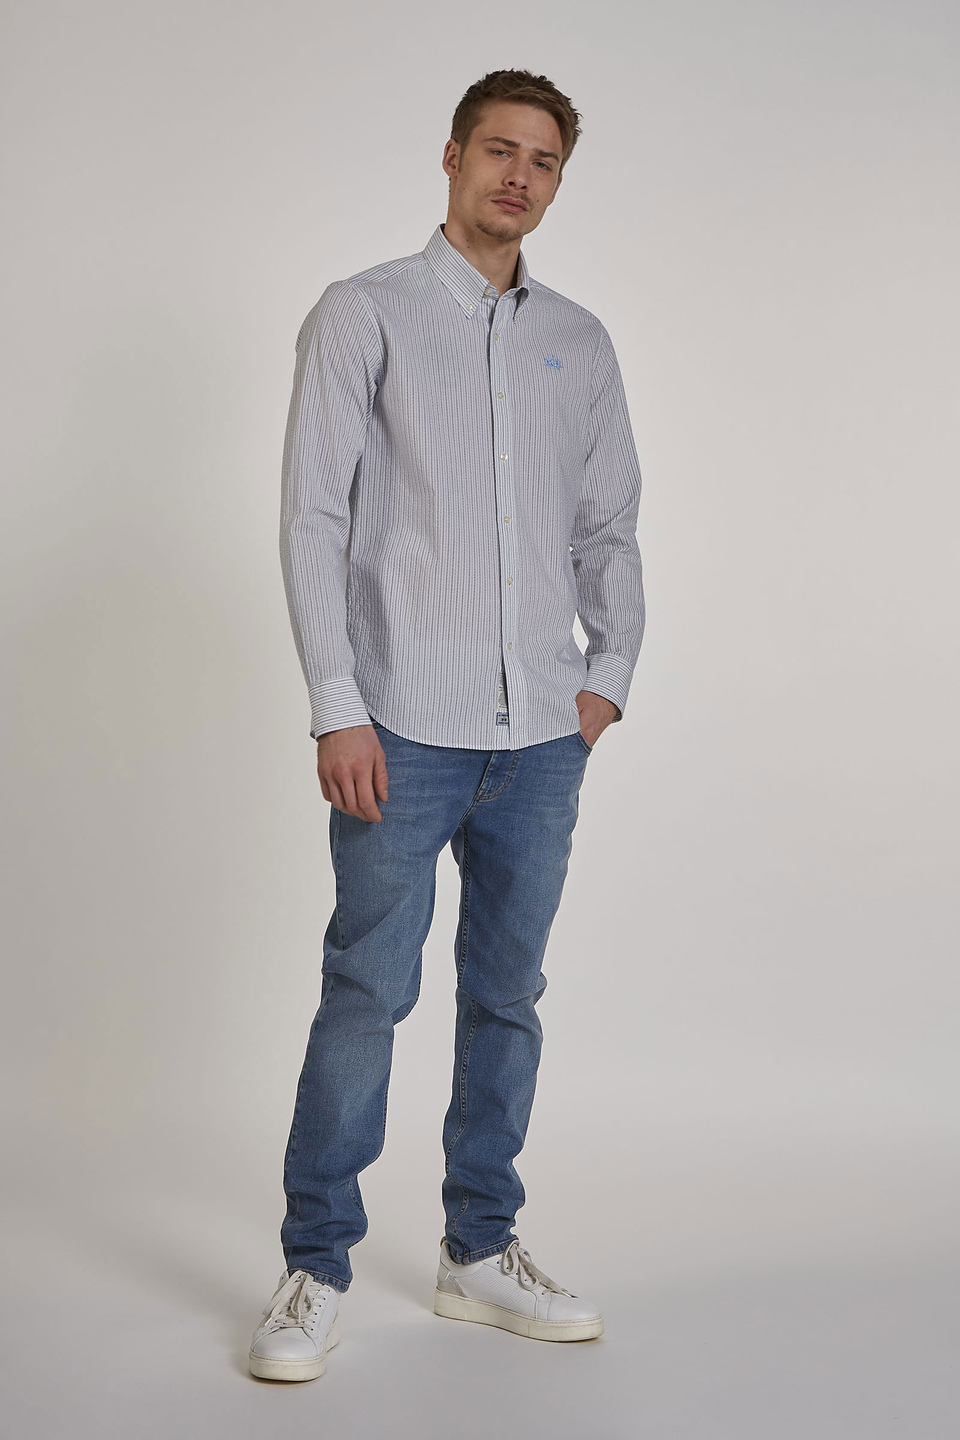 Chemise homme à manches longues et coupe classique | La Martina - Official Online Shop